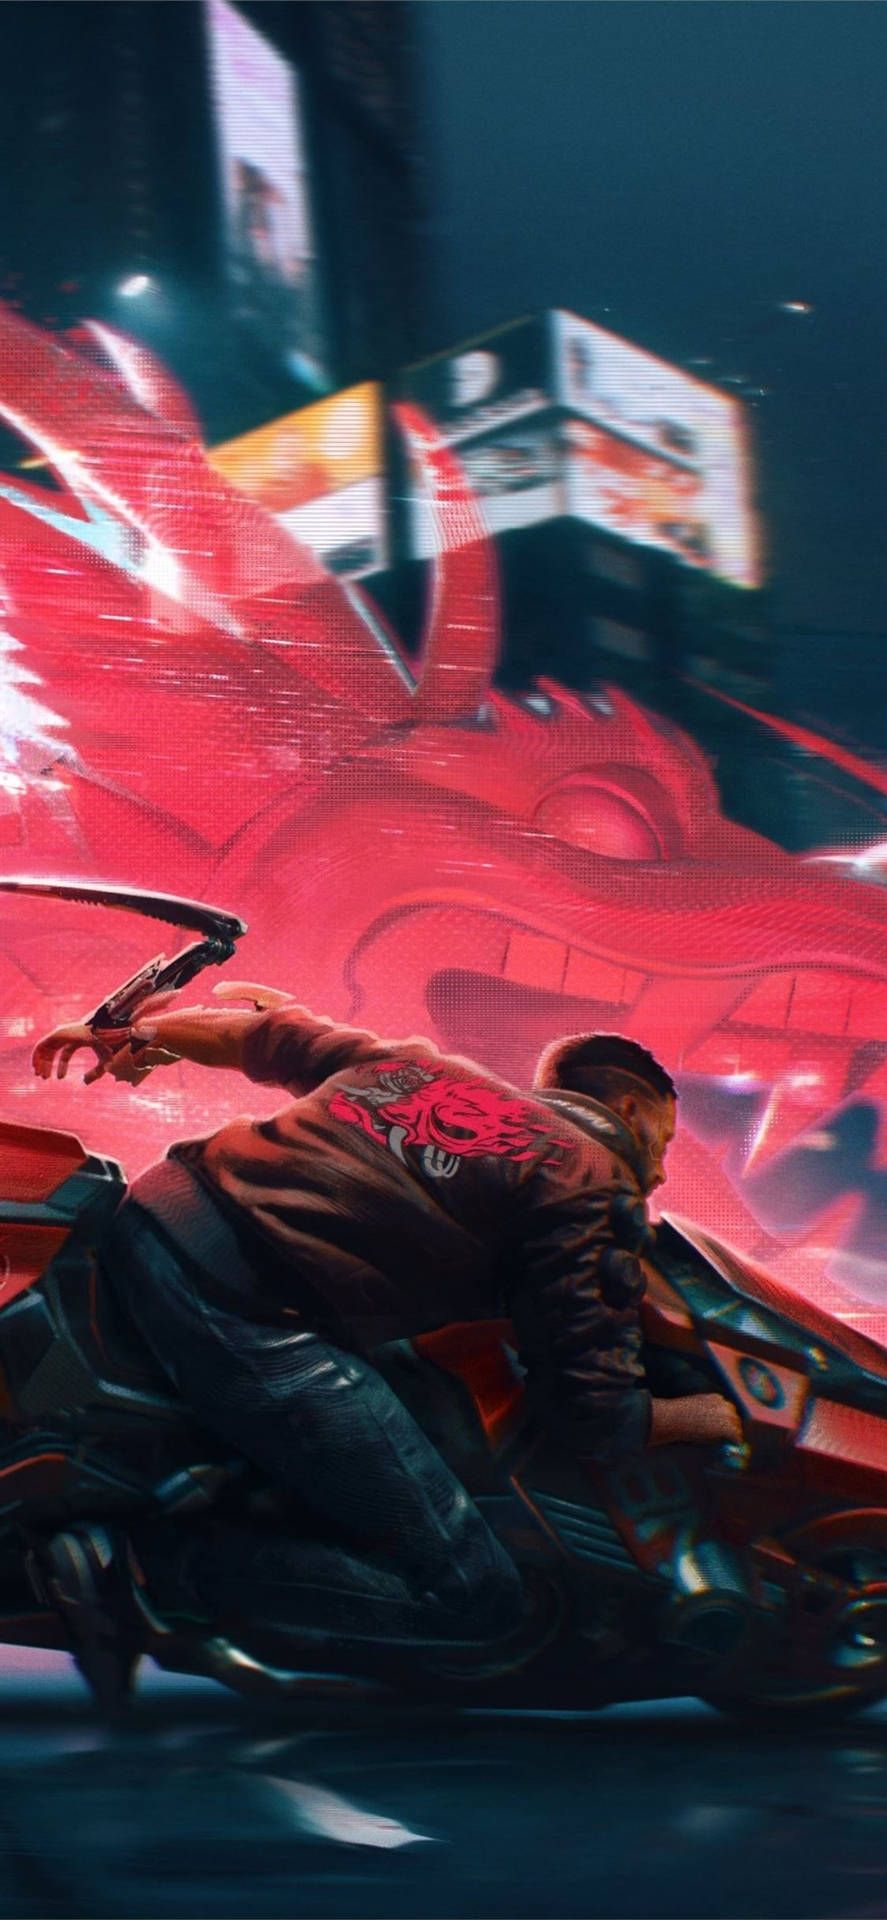 Cyberpunk 2077 wallpaper with a man holding a gun - Cyberpunk 2077